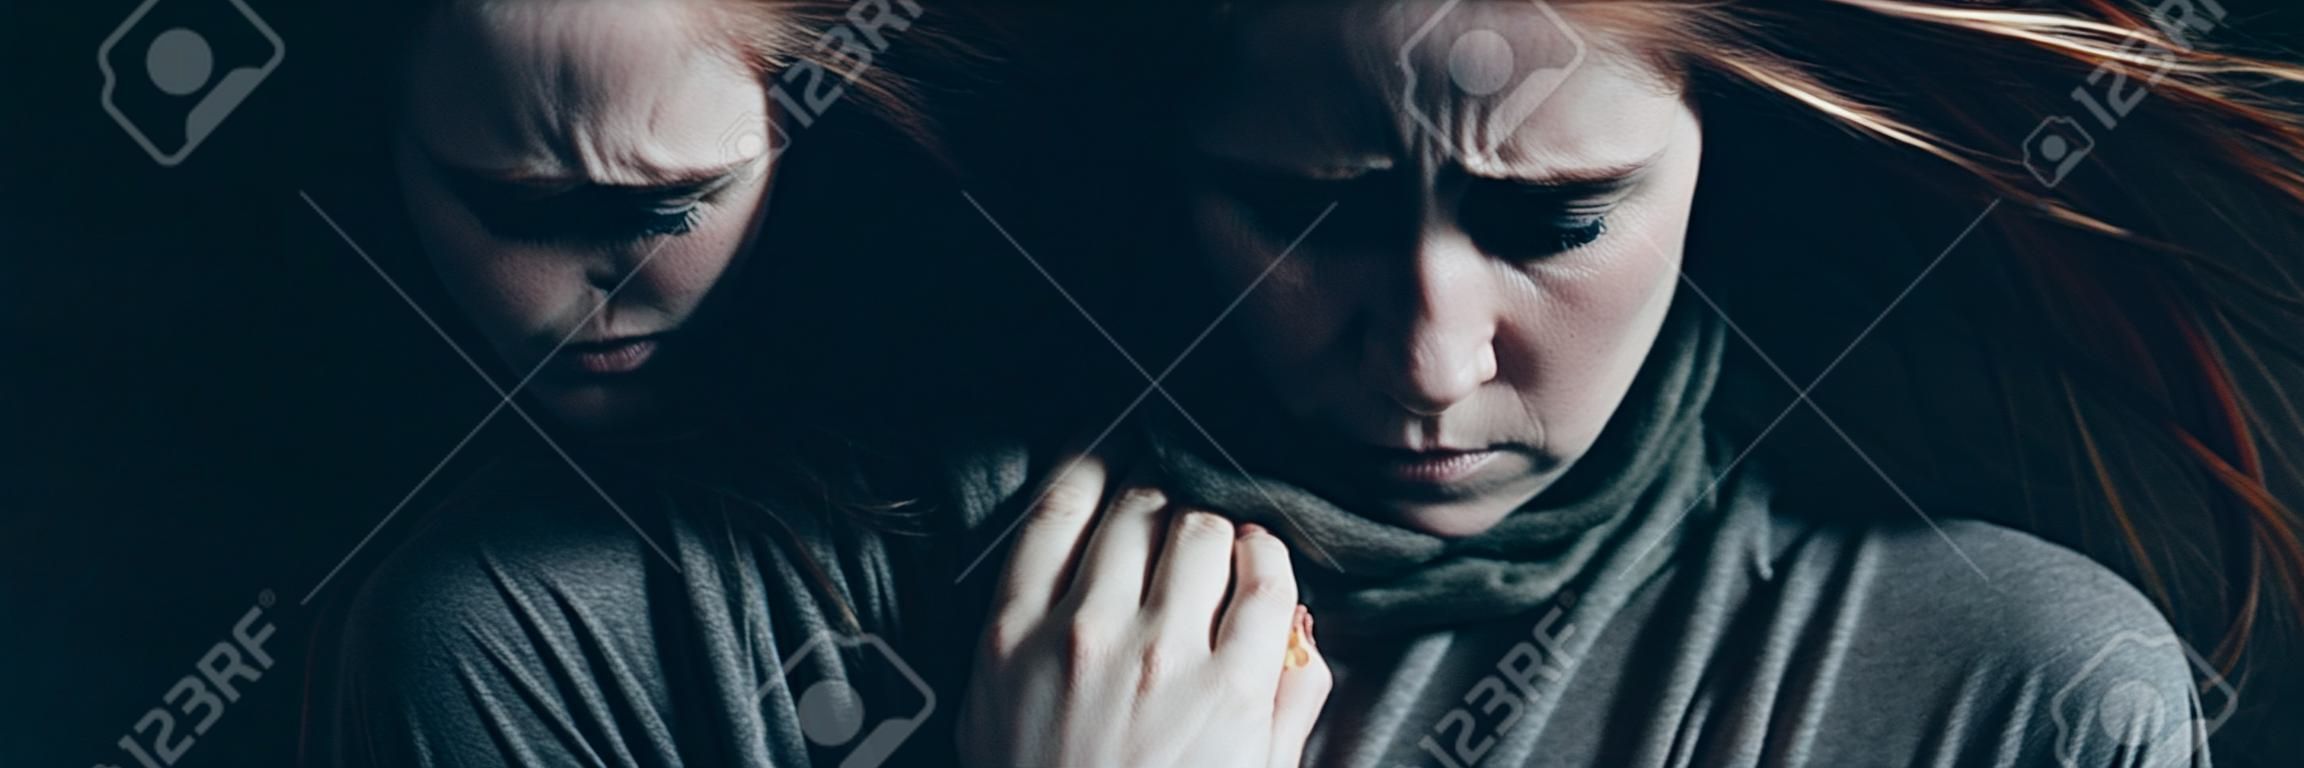 Młoda osamotniona kobieta z depresją jest zimny w zmroku